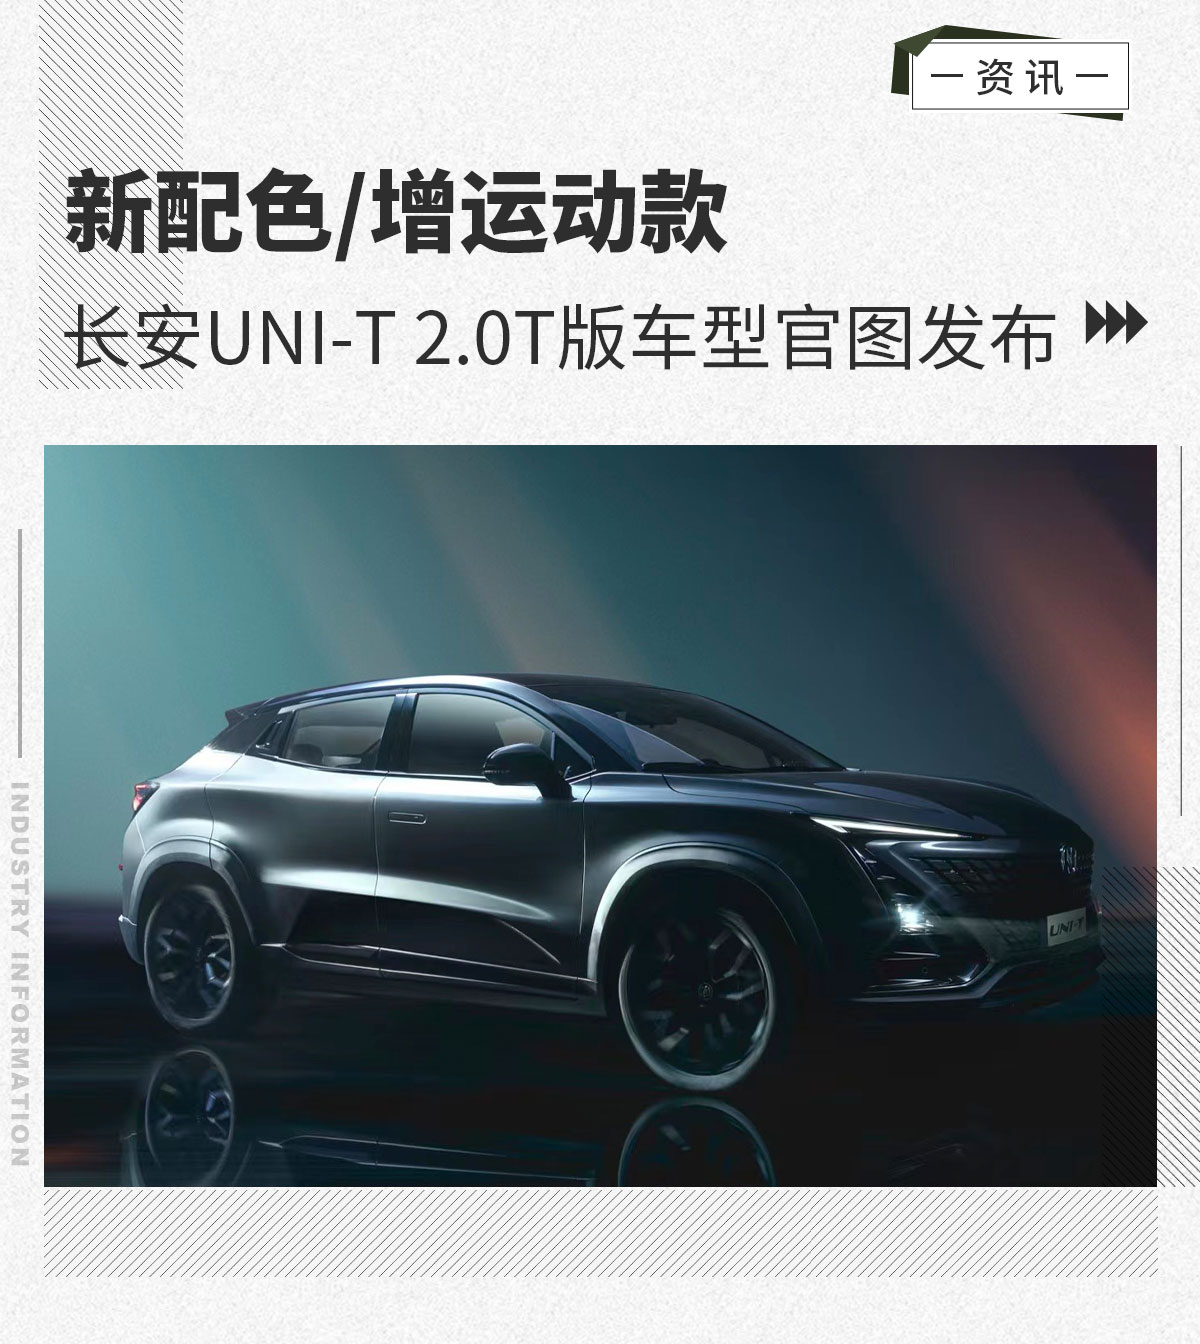 长安UNI-T 2.0T版本车型官图正式发布